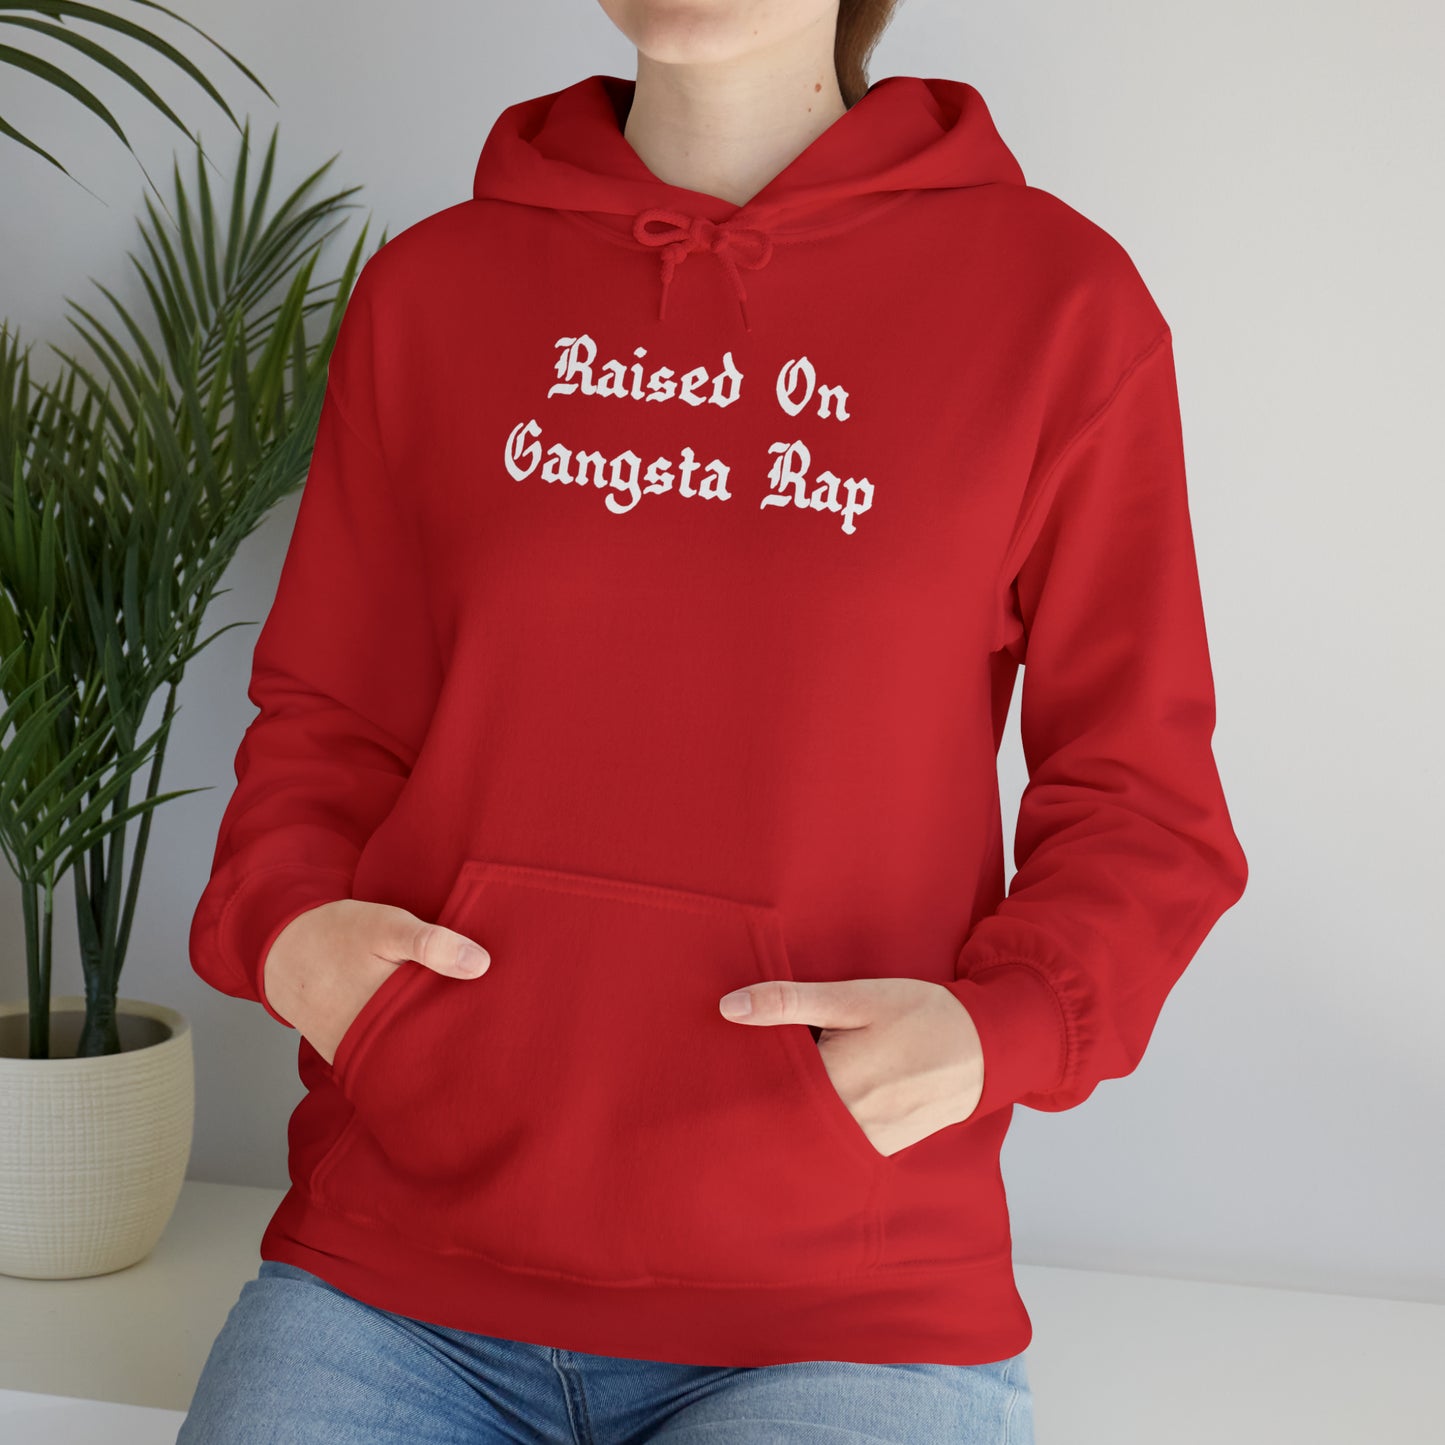 Raised on Gangsta Rap Hoodie Sweatshirt, Rap Hoodie, Funny Hip-Hop Gift